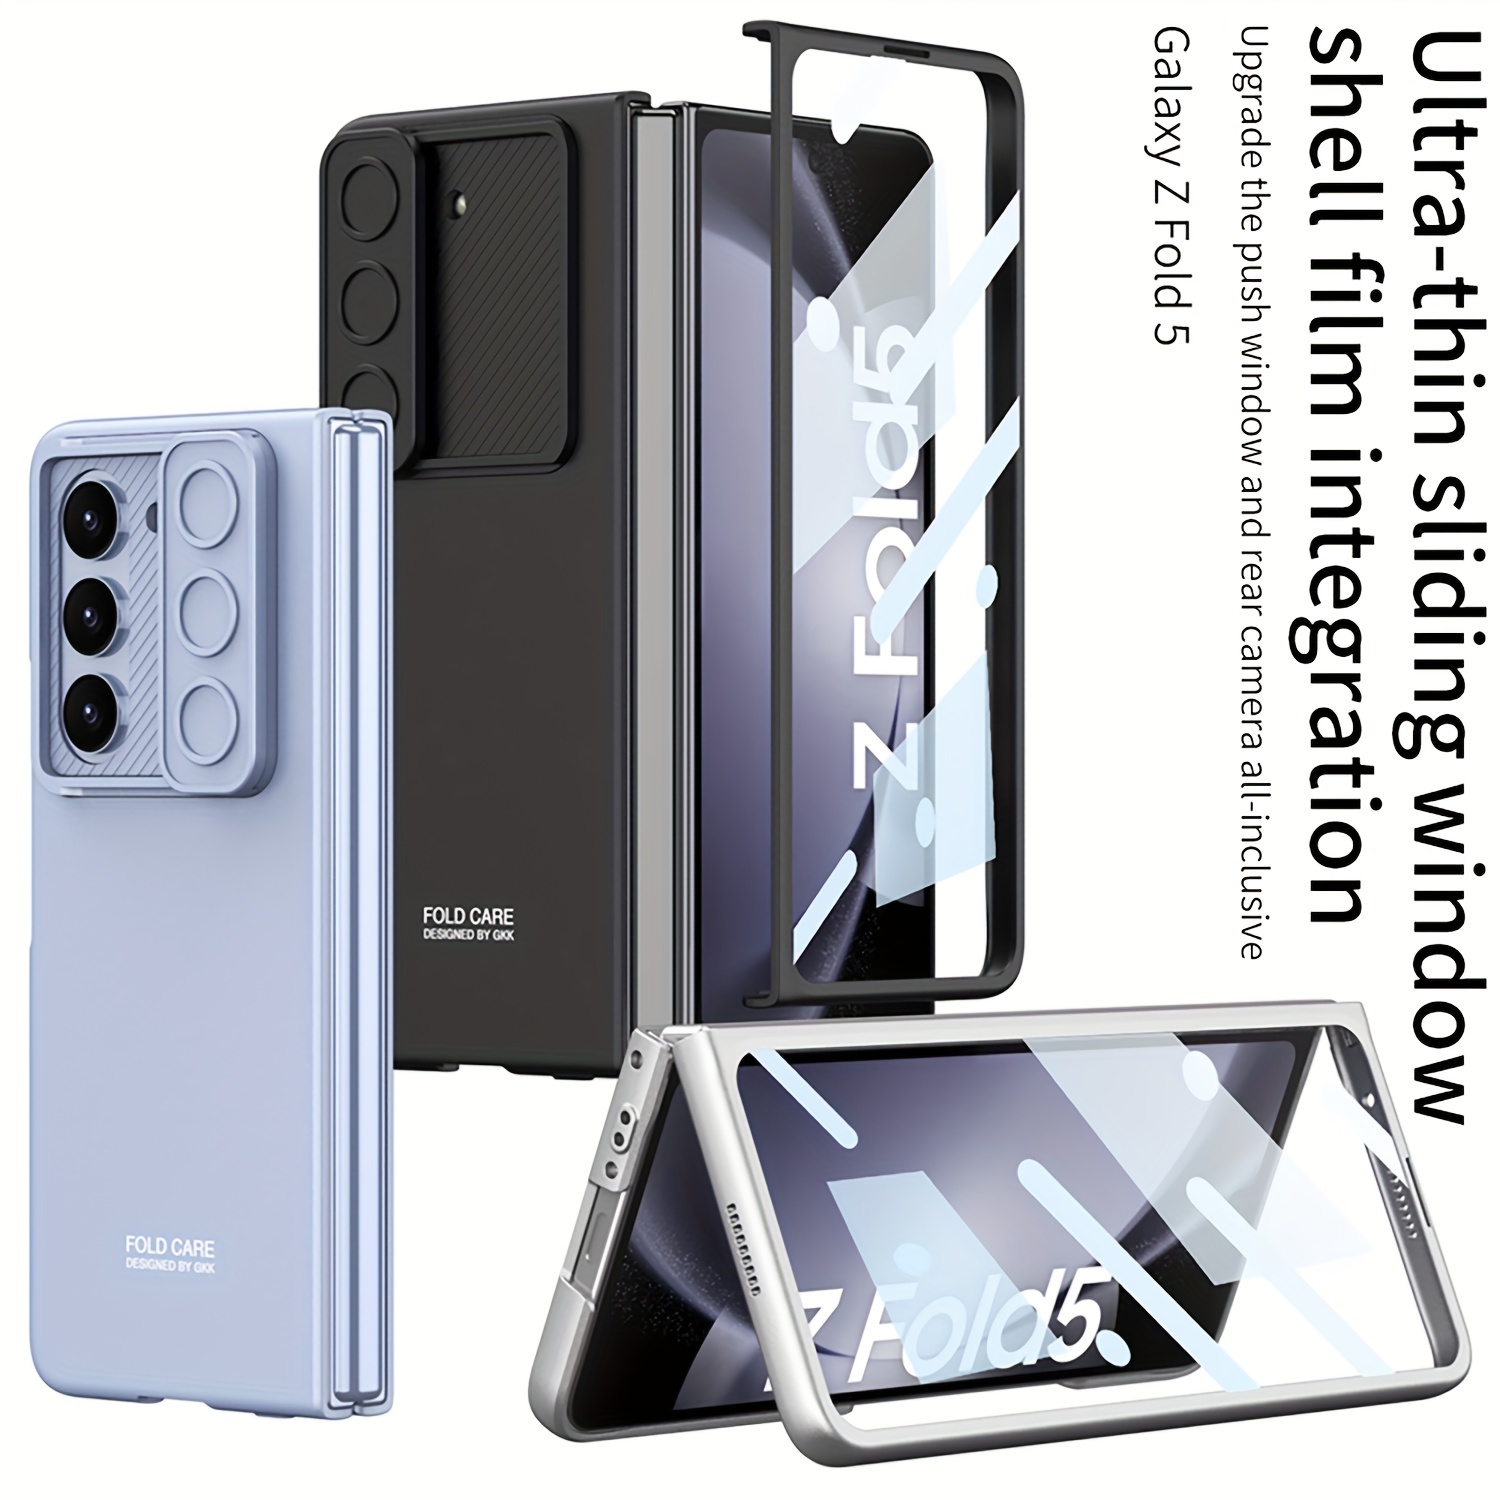 Für Galaxy Z Fold 5 Hülle 2023, Robuste Schutzhülle Für Kameraobjektiv,  S-stifthalter Und Scharnierschutz, Displayschutz, Robuste Ständerabdeckung, Mehr Kaufen, Mehr Sparen